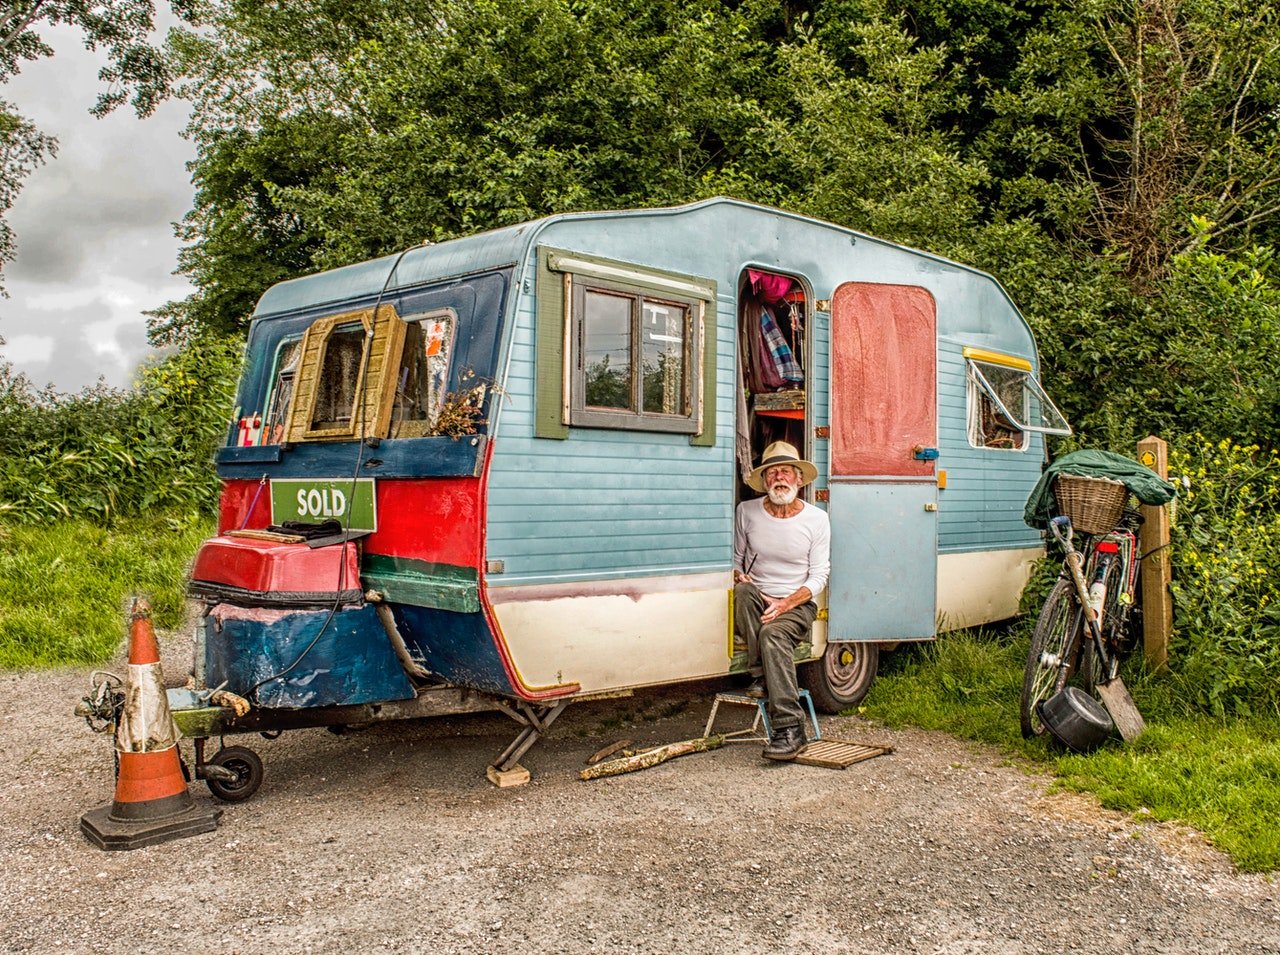 Der Großonkel lebte in einem dreckigen Wohnwagen | Quelle: Pexels